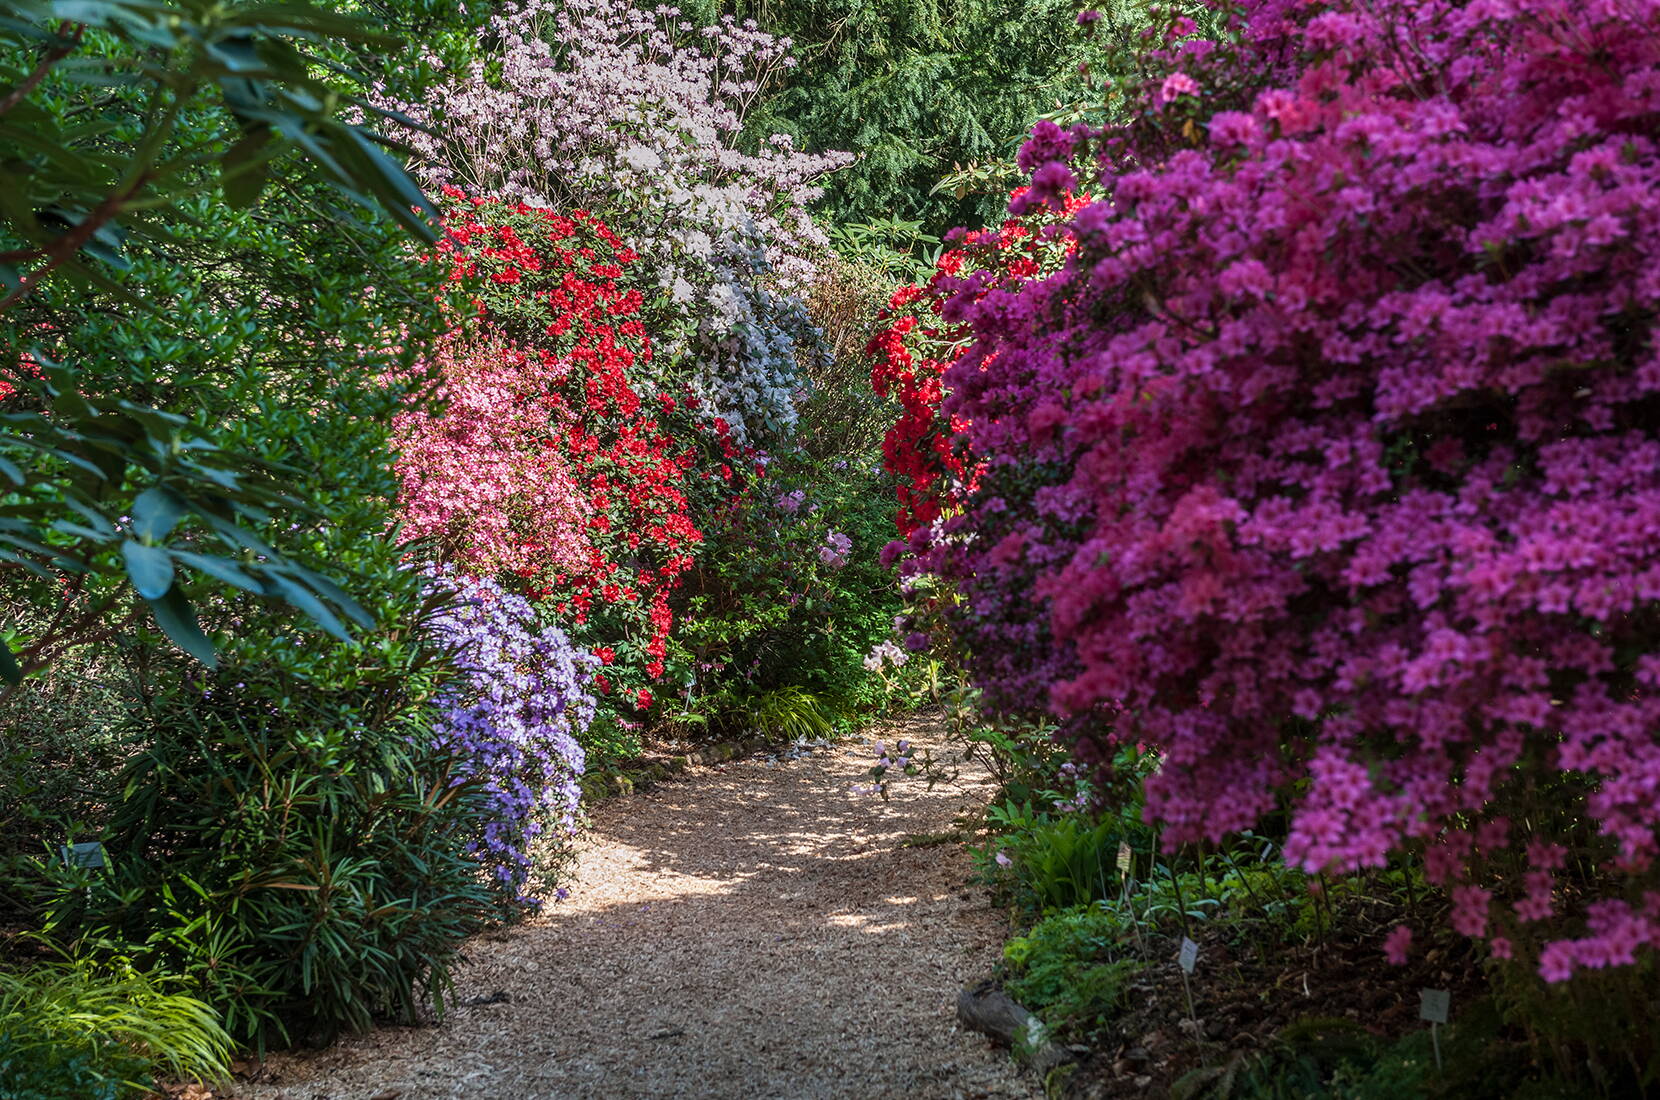 Die Merian Gärten sind reiche botanische Gärten, historische Parkanlage und liebevoll gestalteter Erholungsraum zugleich. Sie locken das ganze Jahr mit üppiger Blütenpracht, einer einzigartigen Pflanzenvielfalt und eindrücklichen botanischen Sammlungen.